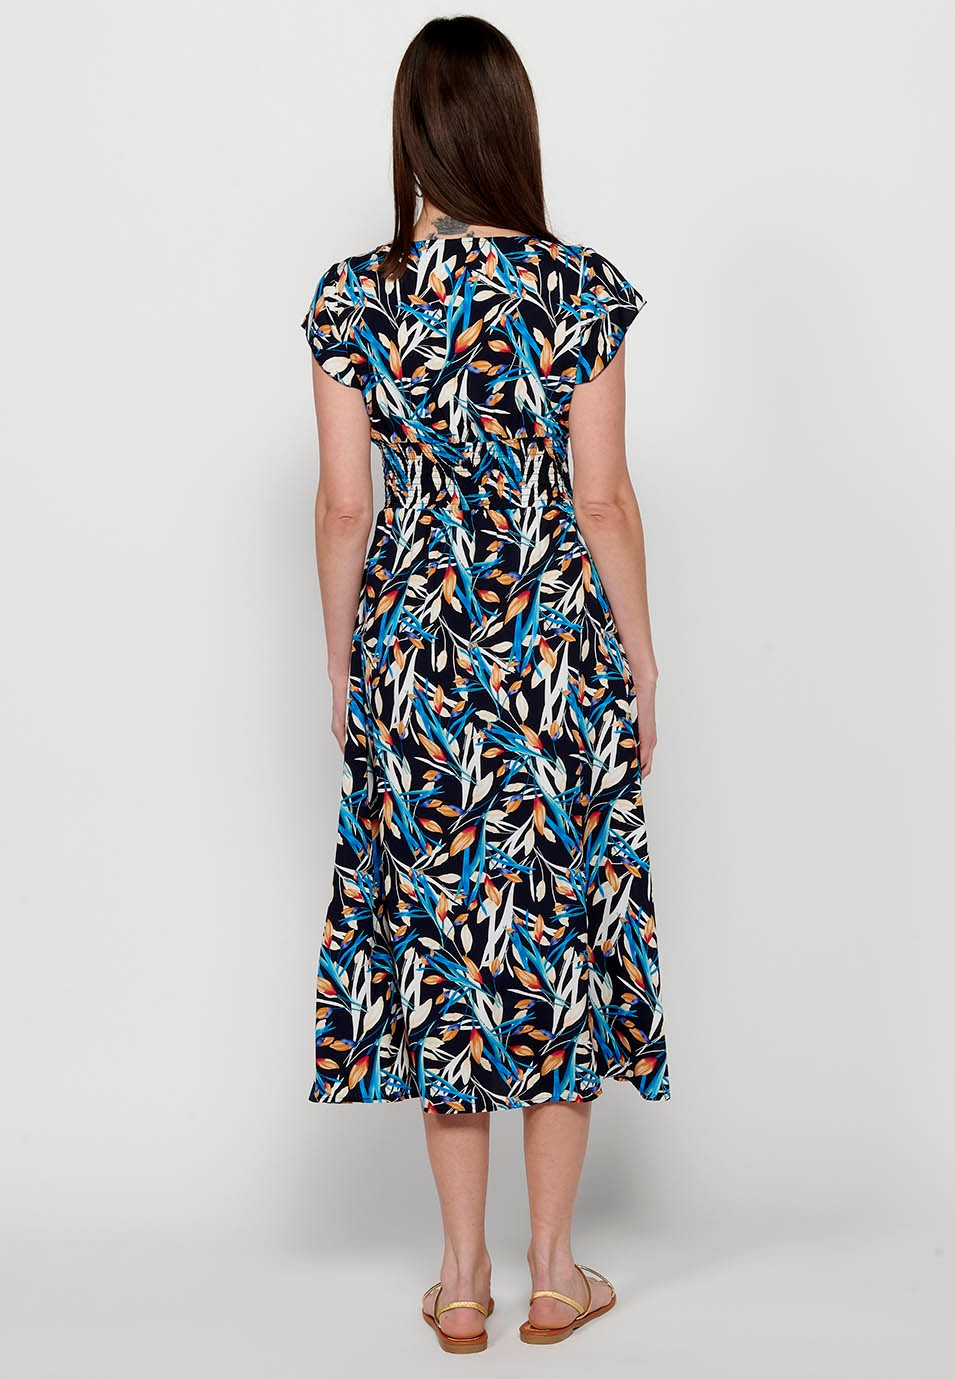 Damen-Kleid mit mehrfarbigem Blumendruck, V-Ausschnitt, kurzen Ärmeln und Schlitz vorne 1